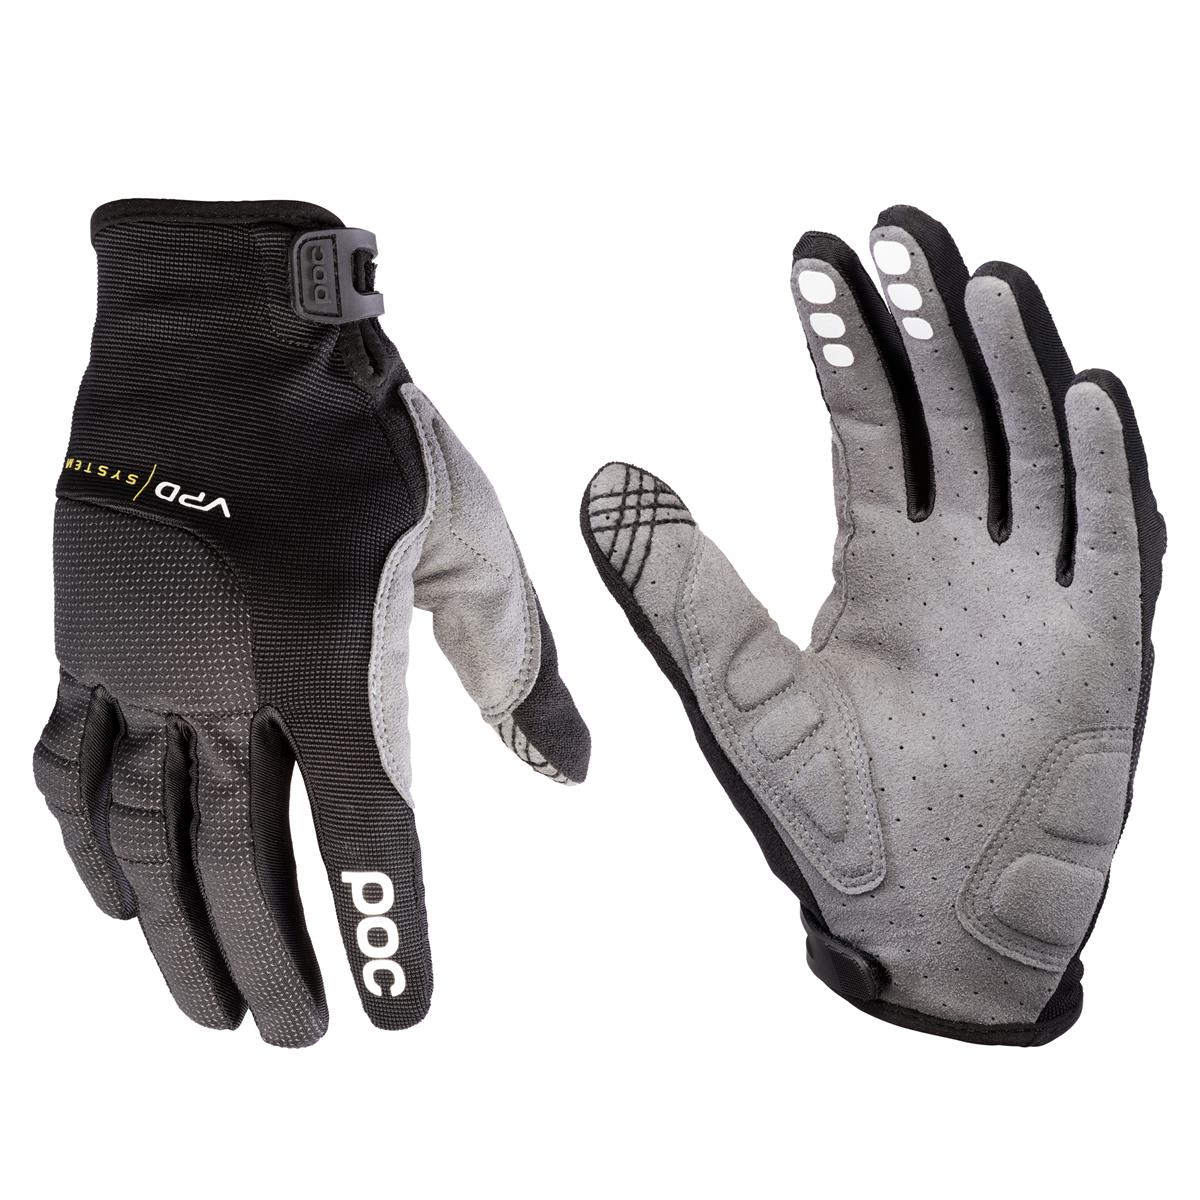 Guanti protettivi Resistance Pro DH Glove nero taglia taglia XL